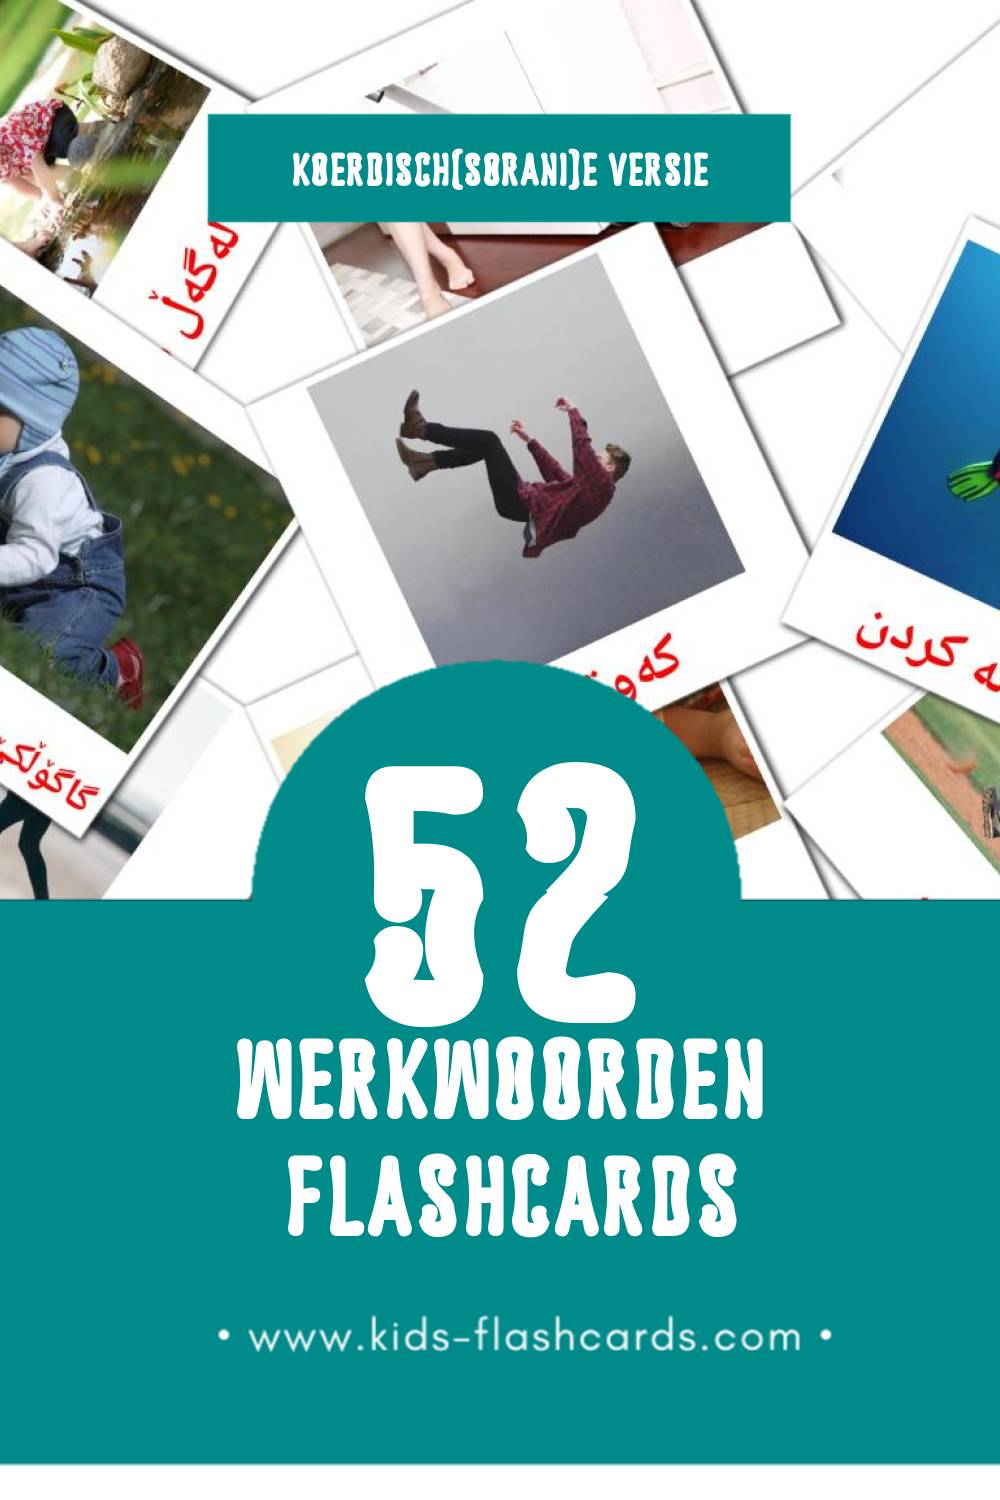 Visuele کردارەکان Flashcards voor Kleuters (52 kaarten in het Koerdisch(sorani))